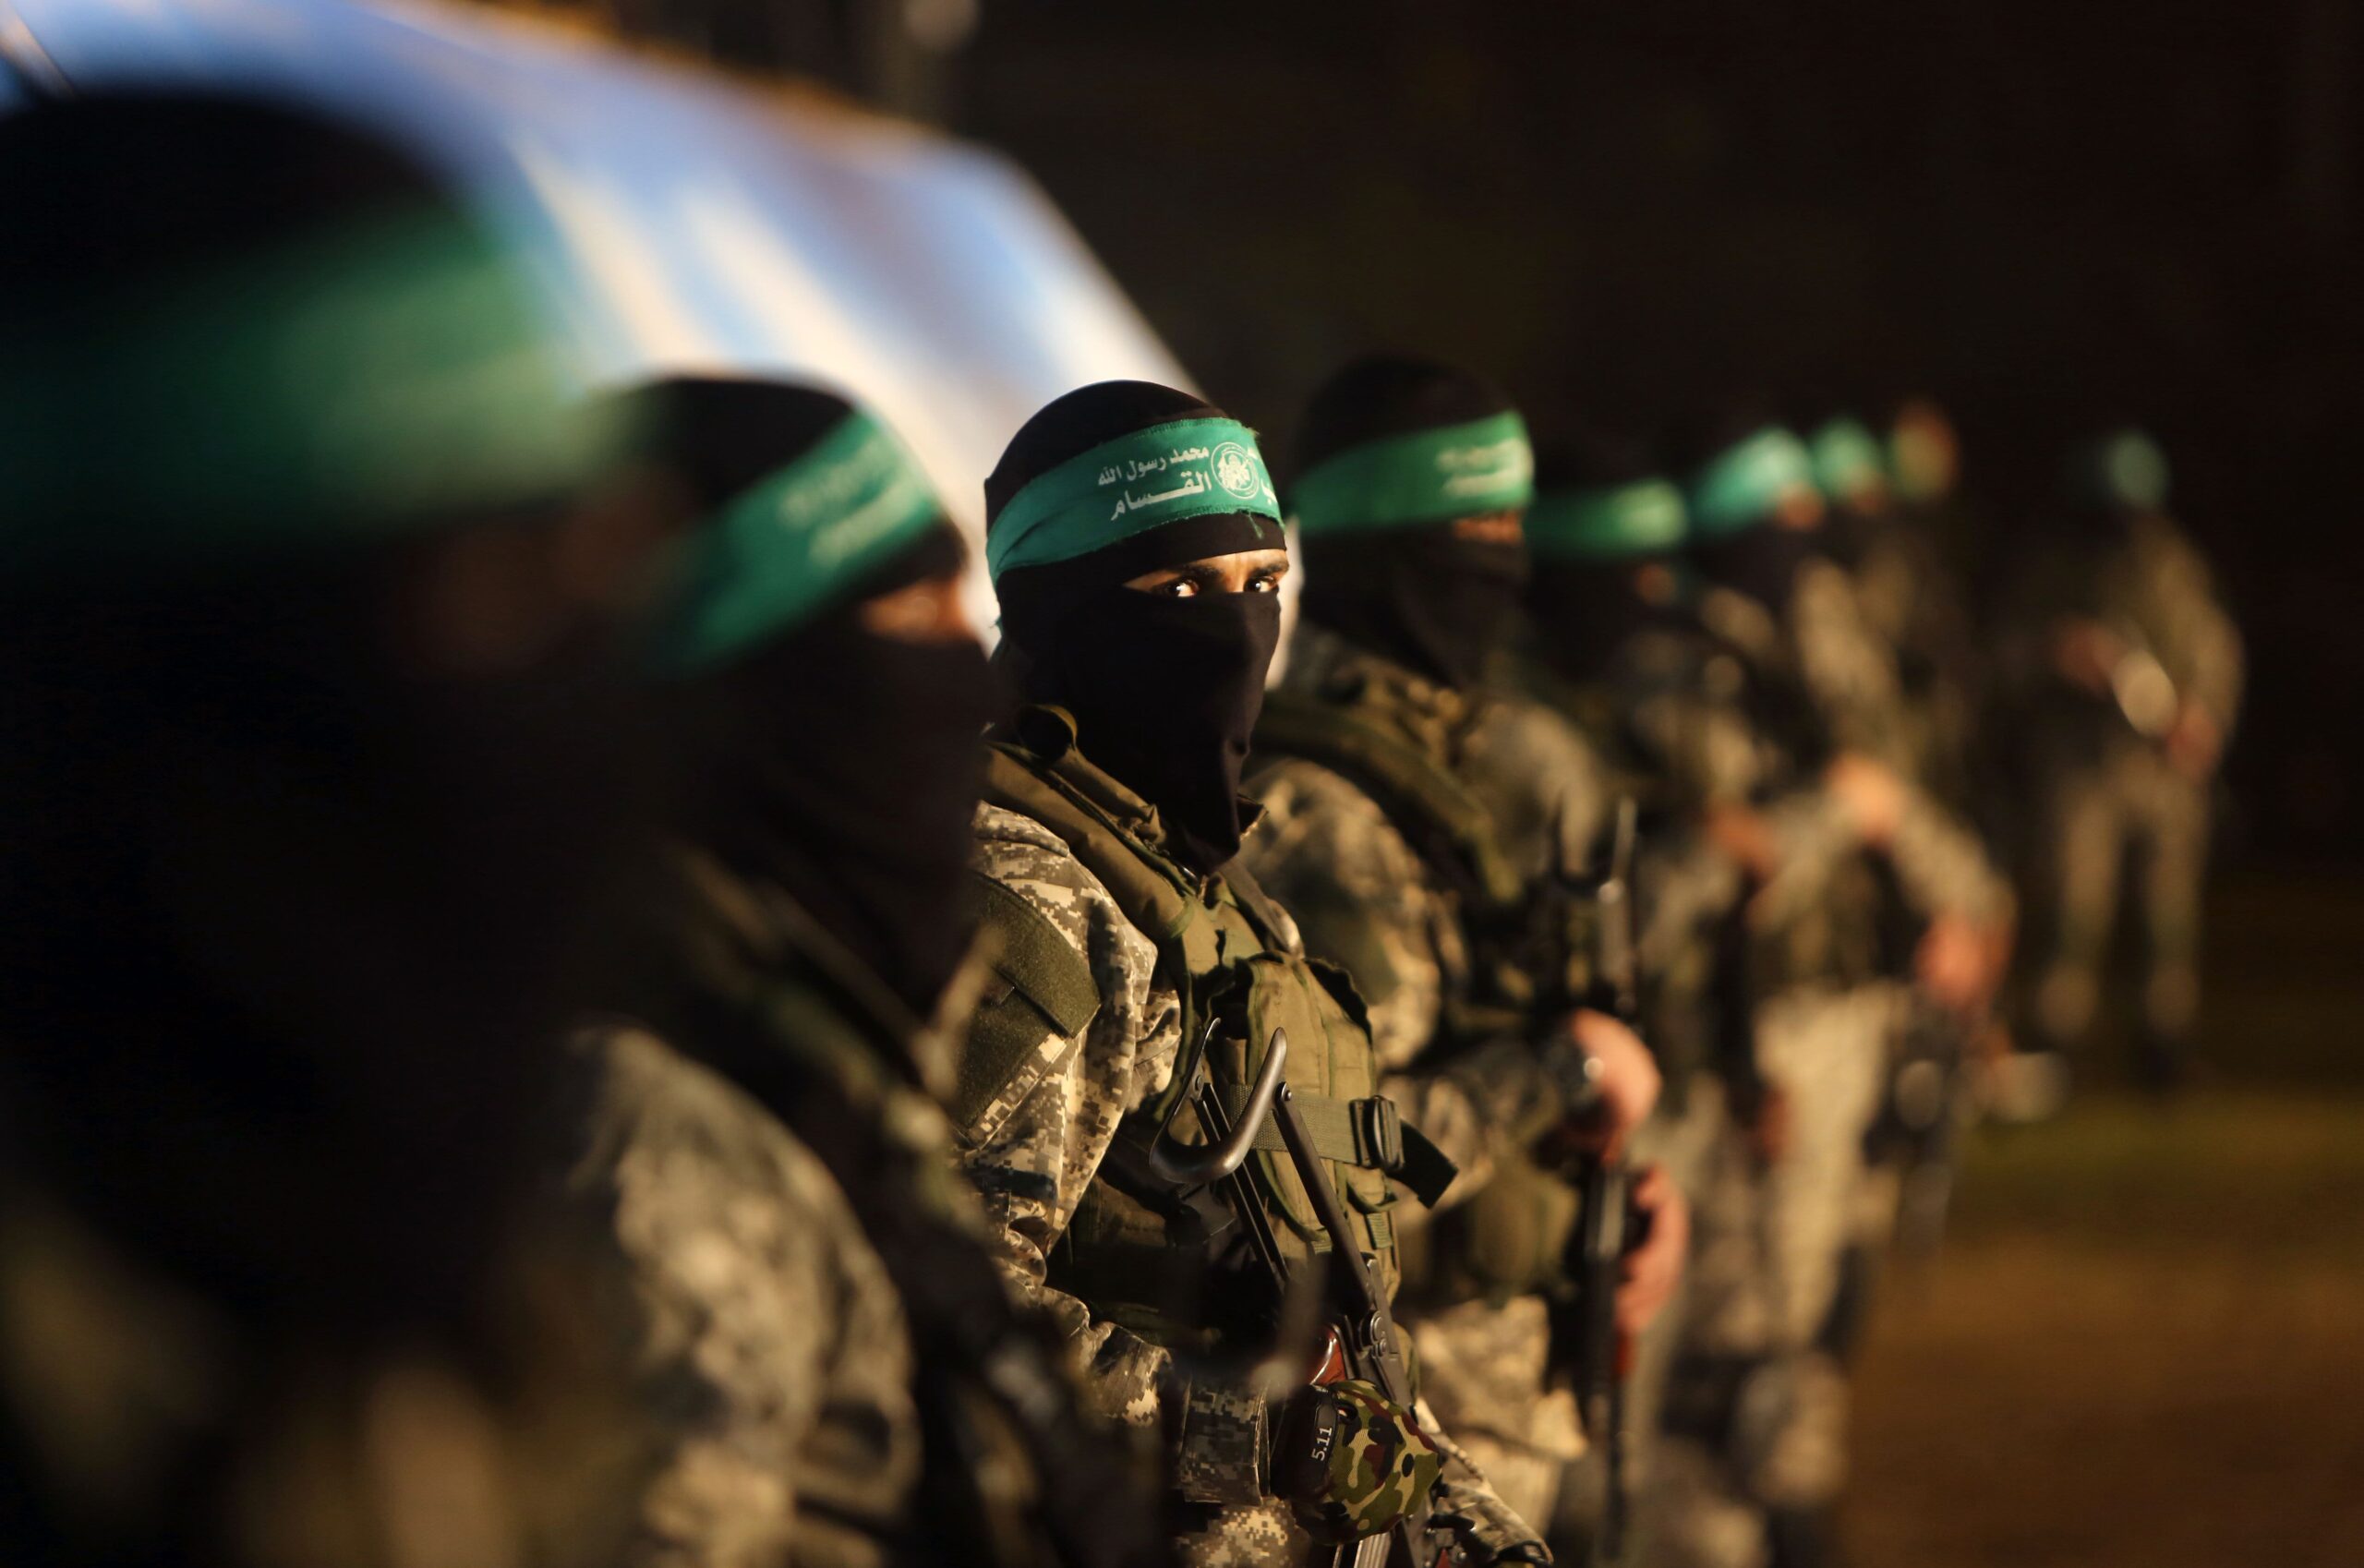 Războiul Israel-Hamas. Negocieri pentru armistițiu în Orientul Mijlociu